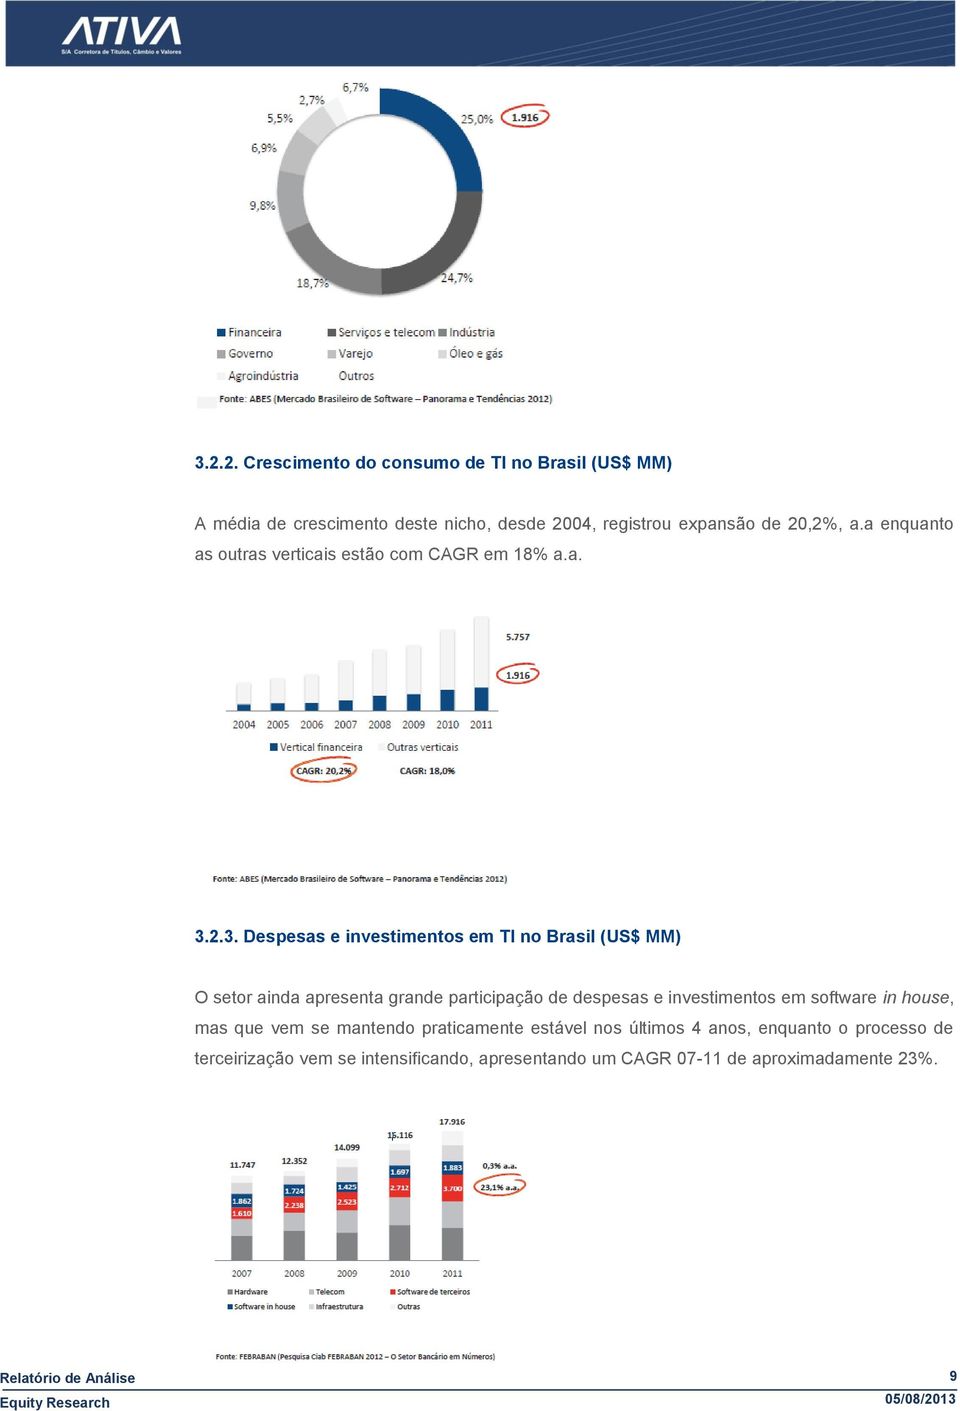 2.3. Despesas e investimentos em TI no Brasil (US$ MM) O setor ainda apresenta grande participação de despesas e investimentos em